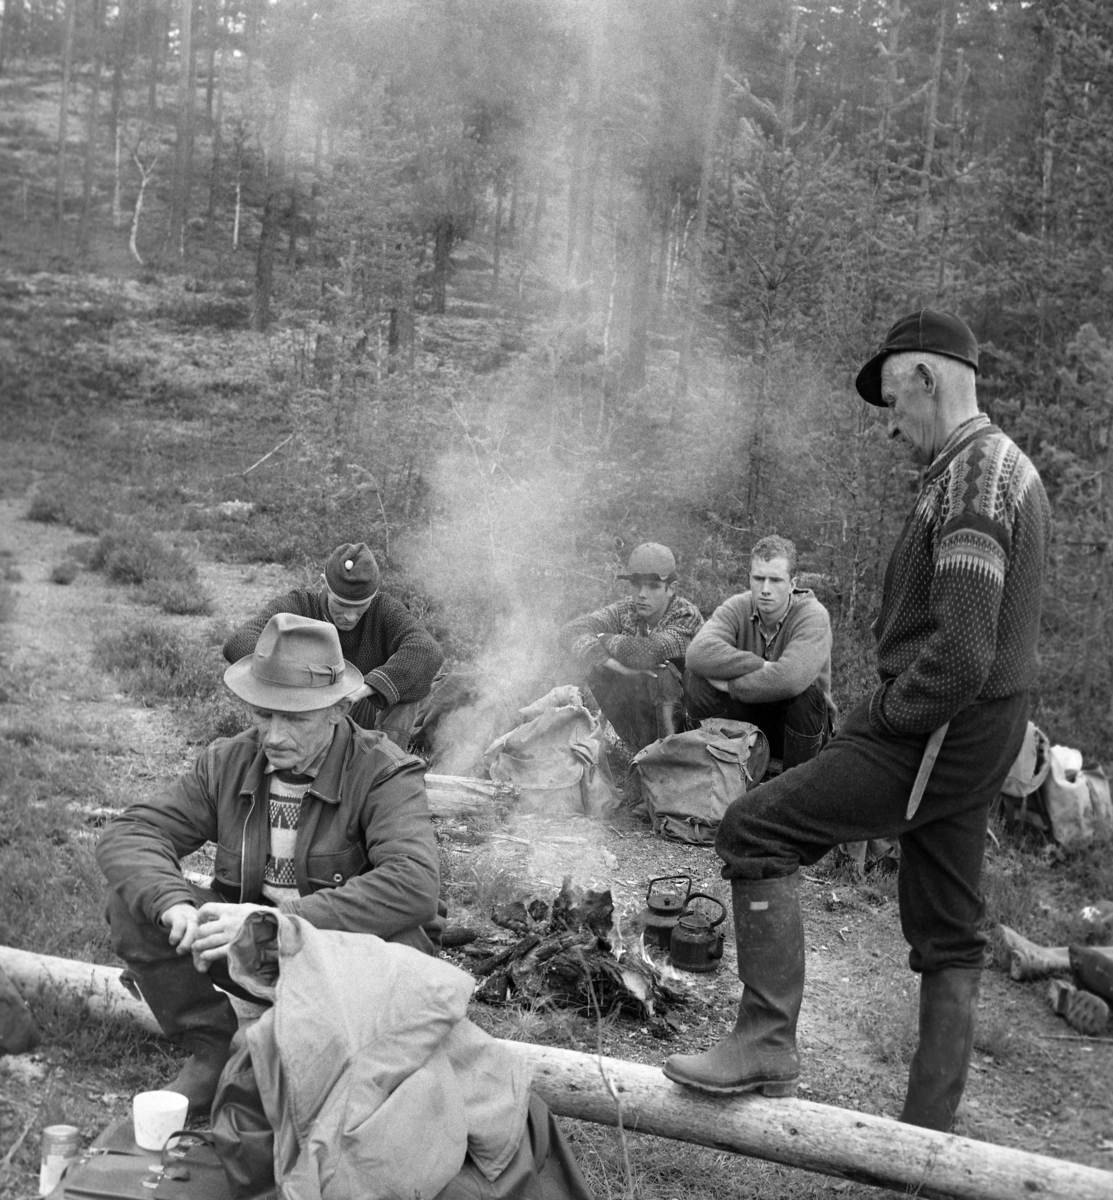 Seks tømmerfløtere kviler på en elvebrink ved Julussa i Elverum i Hedmark våren 1969.  Kvileplassen er en lysning i et landskap med furuskog, der karene har gjort opp et lite bål.  To sotete kaffekjeler ved siden av bålet tyder på at de har nytt litt varmt drikke.  En foreløpig uidentifisert kar satt på en tømmerstokk i forgrunnen, mens tre noe yngrer karer satt på bakken på den andre sida av bålet.  Dette var Kjell Arne Langdalen (med topplue), Finn Sletengen (med skjoldlue), Simen Bergerengen (barhodet).  Ved den nevnte stokken, til høyre i bildet, sto basen for dette fløterlaget, Asbjørn Langdalen fra Nordskogbygda.  Han var kledd i mørke vadmelsbukser og mønstret strikkejakke, hadde gummistøvler på beina og skjoldlue på hodet.  Flere av karene hadde tydeligvis ryggsekker av grått lerretsstoff med niste og kanskje noen tørre klær.  Mannen som sitter til venstre i forgrunnen ser ut til å ha med seg ei kontorveske av lær, som han bruker som underlag for det kvite kaffekruset sitt. 

1969 var siste fløtingssesong i Julussa.  Det ble fløtet 40 580 stokker med et samlet kubikkmetervolum på 4 277.  Dette var bare cirka 15 prosent av det fløtingsvolumet vassdraget hadde hatt i de første åra etter 2. verdenskrig.